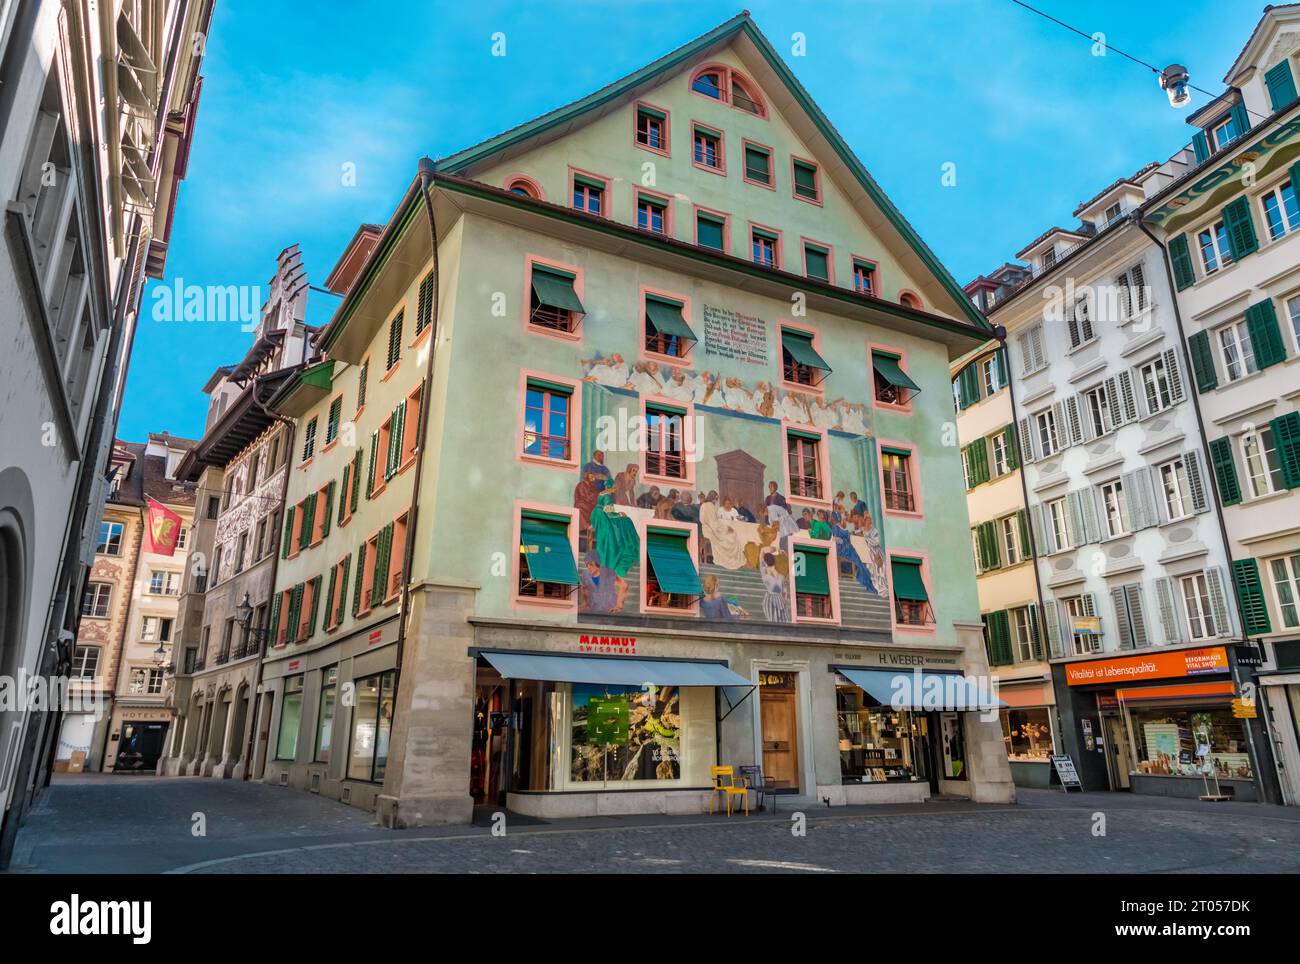 Vue pittoresque de la maison historique 'Zur sonne' sur le Weinmarkt dans la vieille ville de Lucerne. En 1928, l'artiste Eduard Renggli crée la fresque murale... Banque D'Images